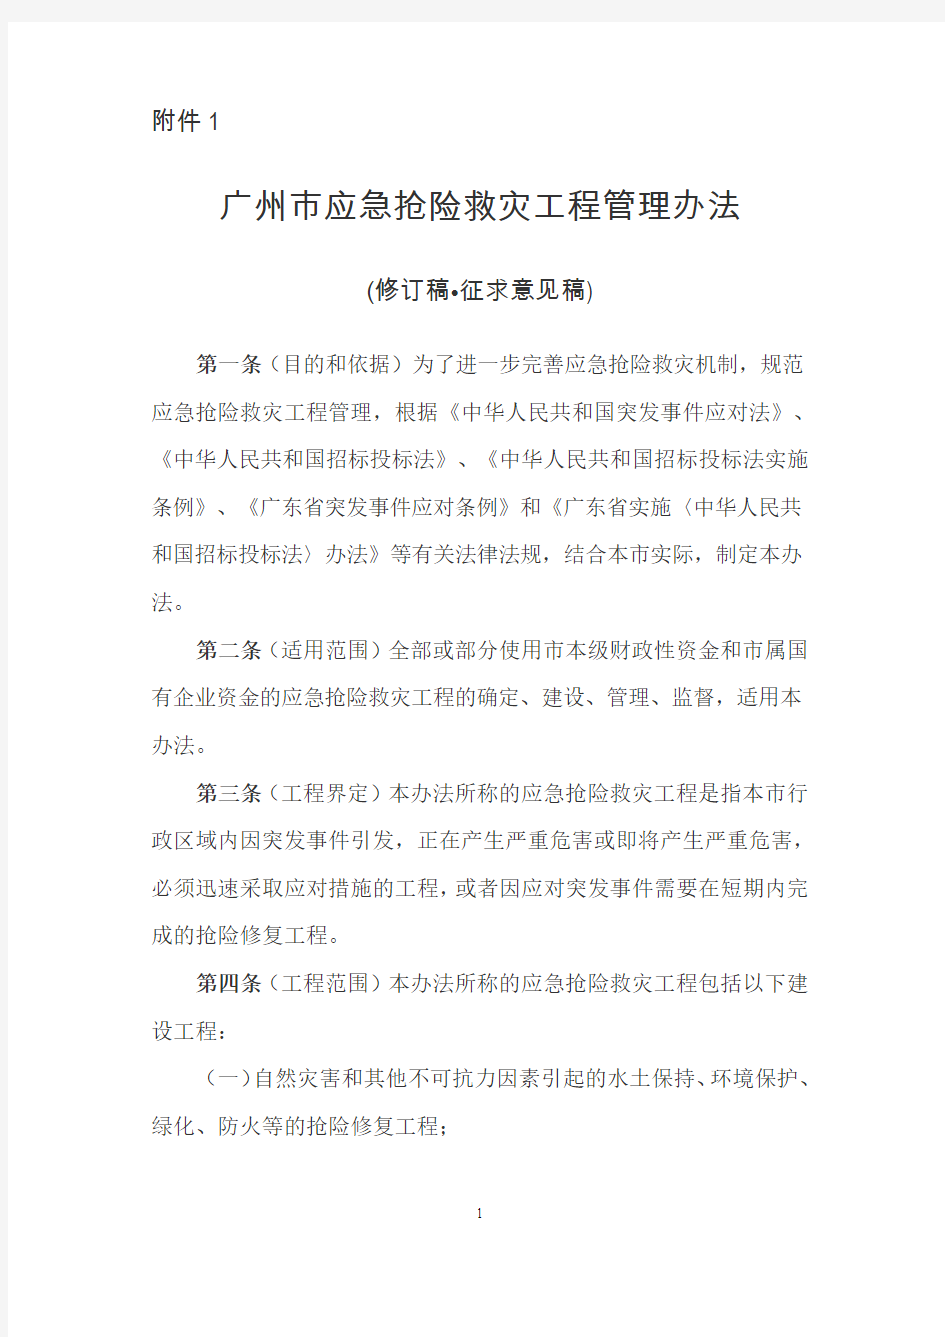 广州市应急抢险救灾工程管理办法(修订稿征求意见稿)